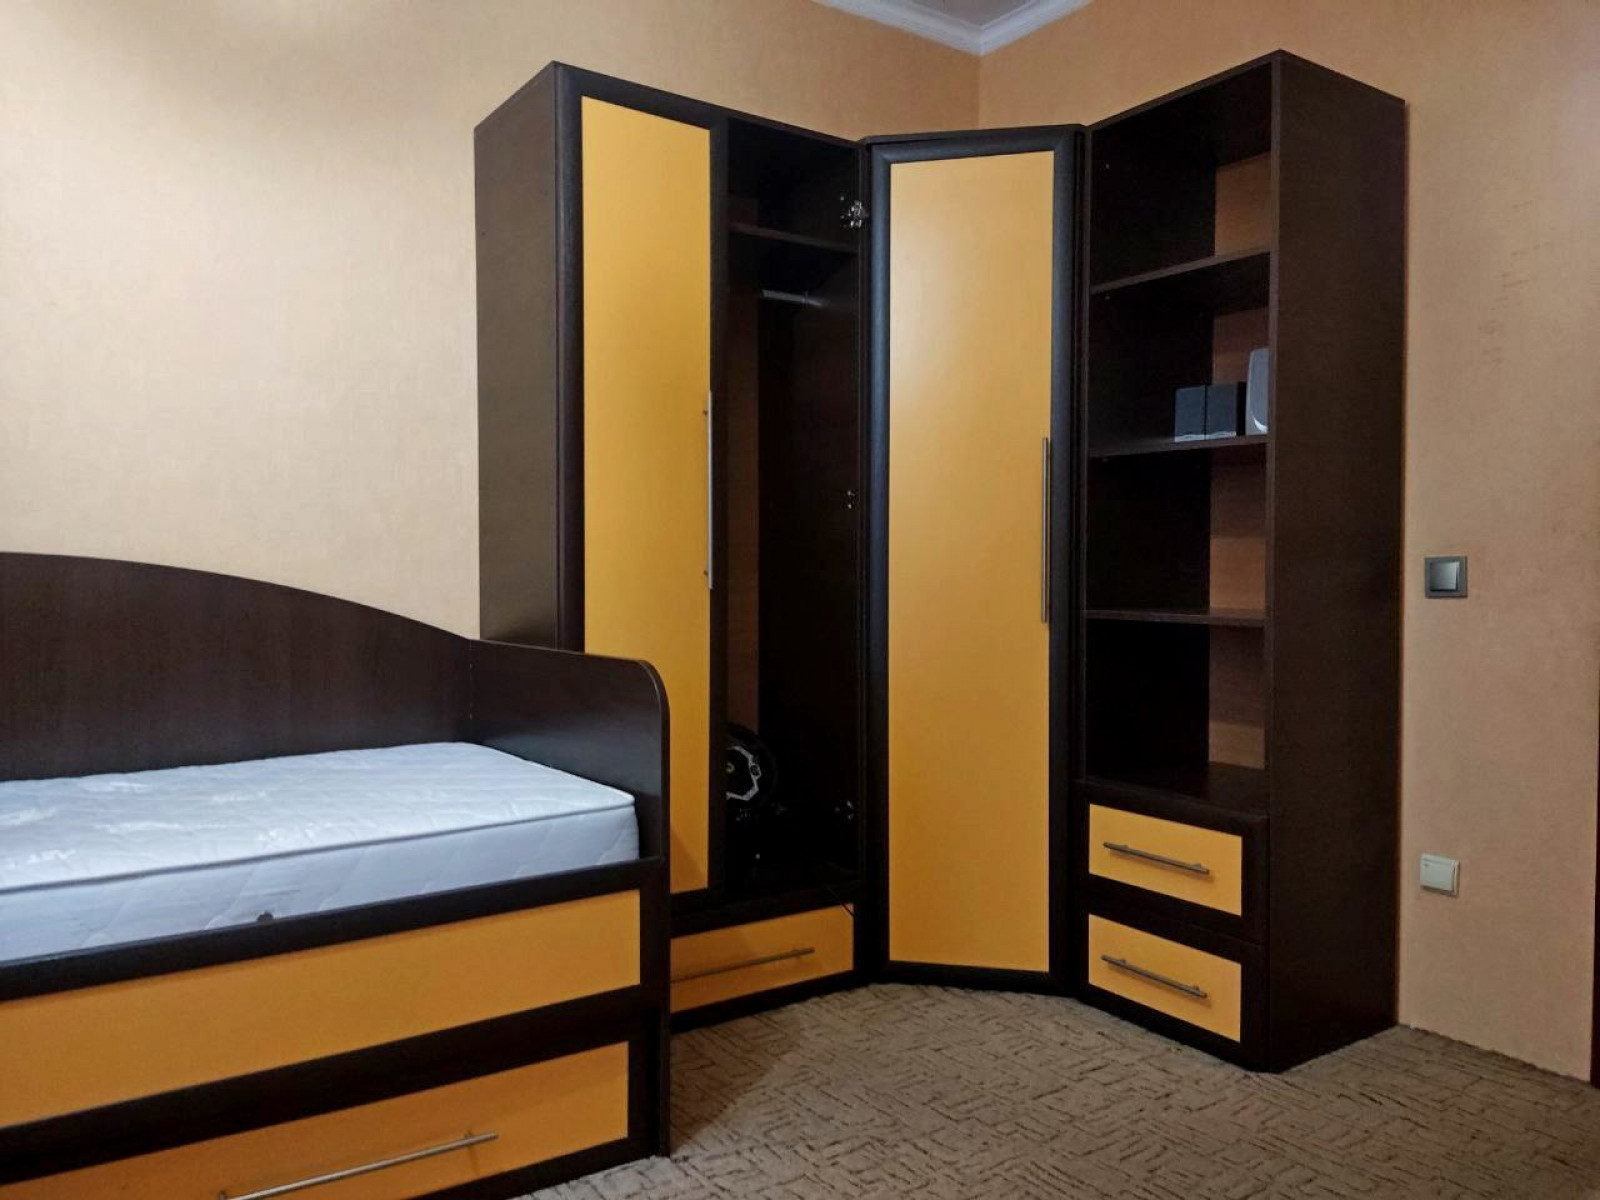 3 кімнатна квартира з гарним ремонтом, облаштована меблями та технікою.